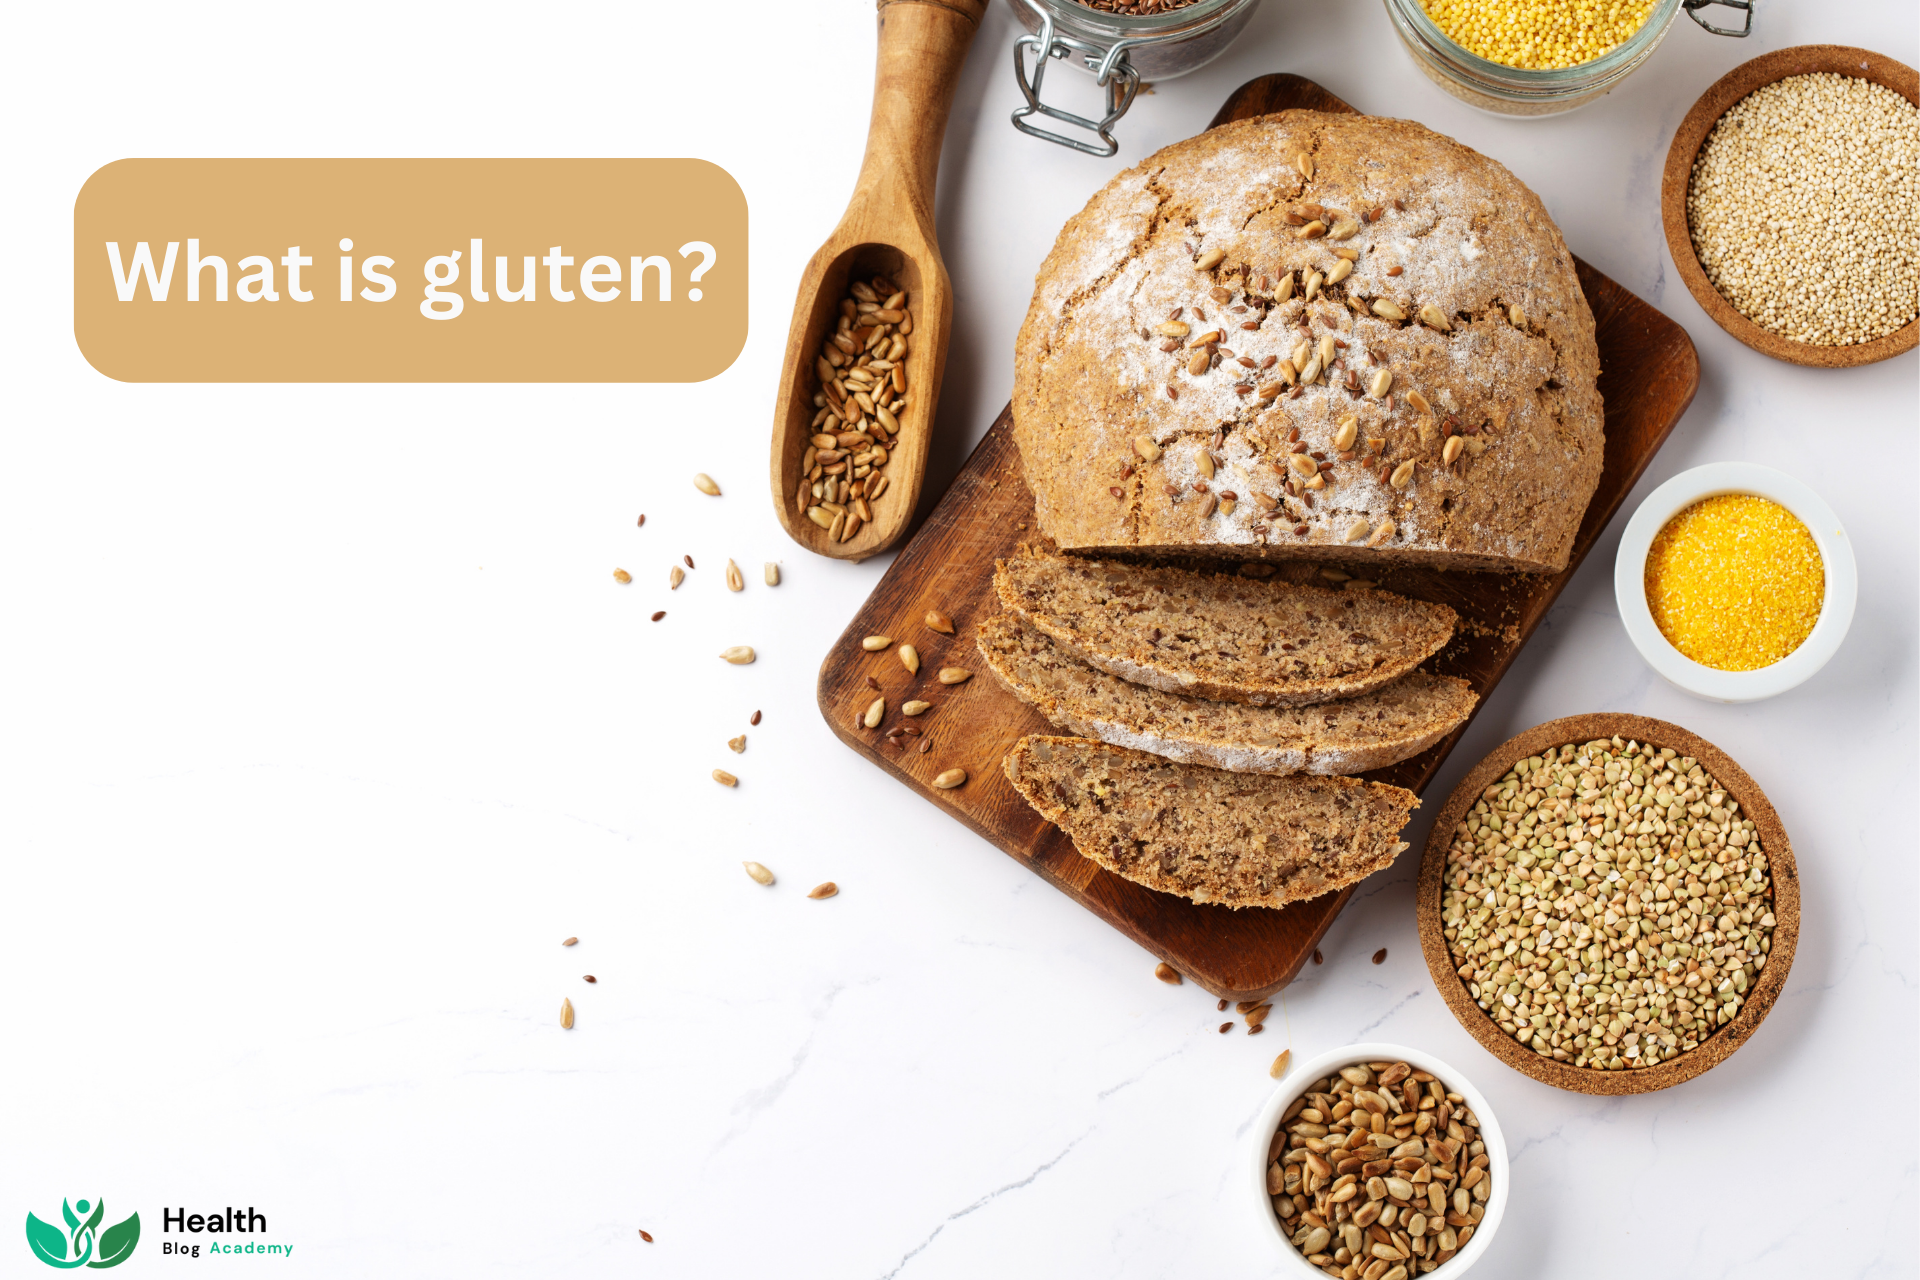 What is gluten